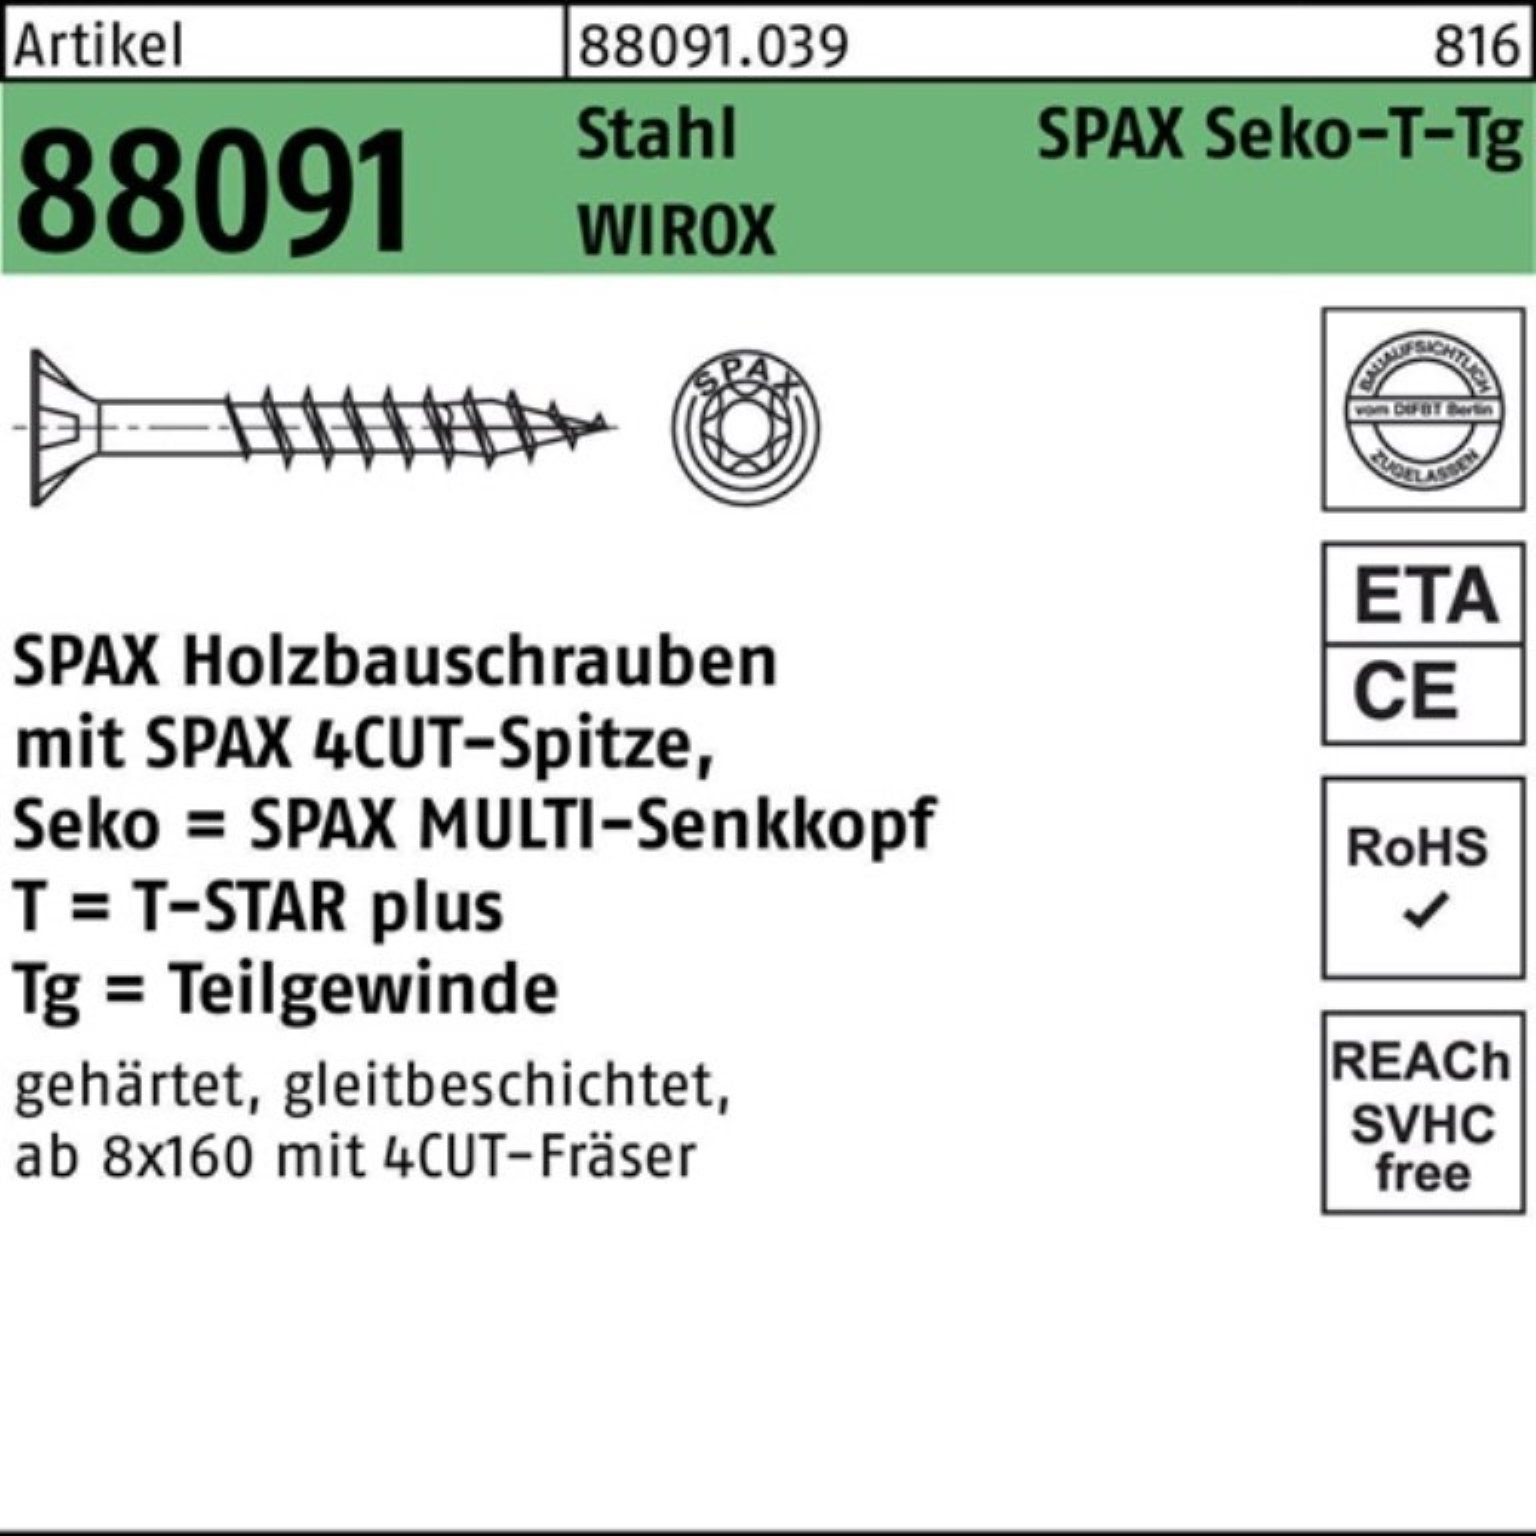 SPAX Schraube 100er Pack Schraube R 88091 SEKO/T-STAR TG 10x 450/80-T50 Stahl WIROX